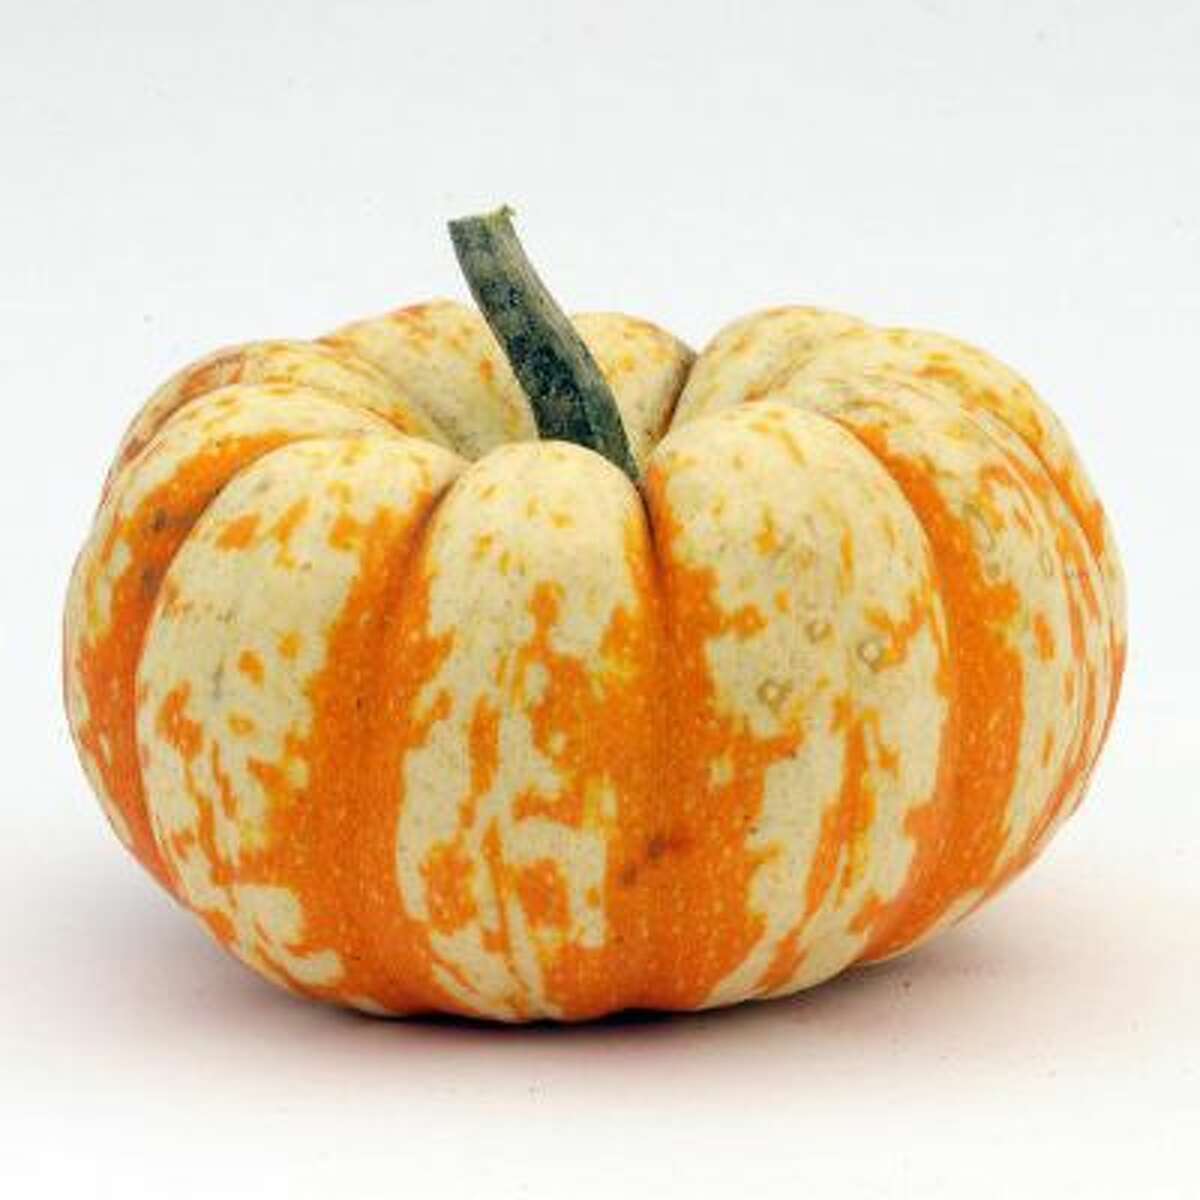 Lil' Pumpkemon pumpkin.